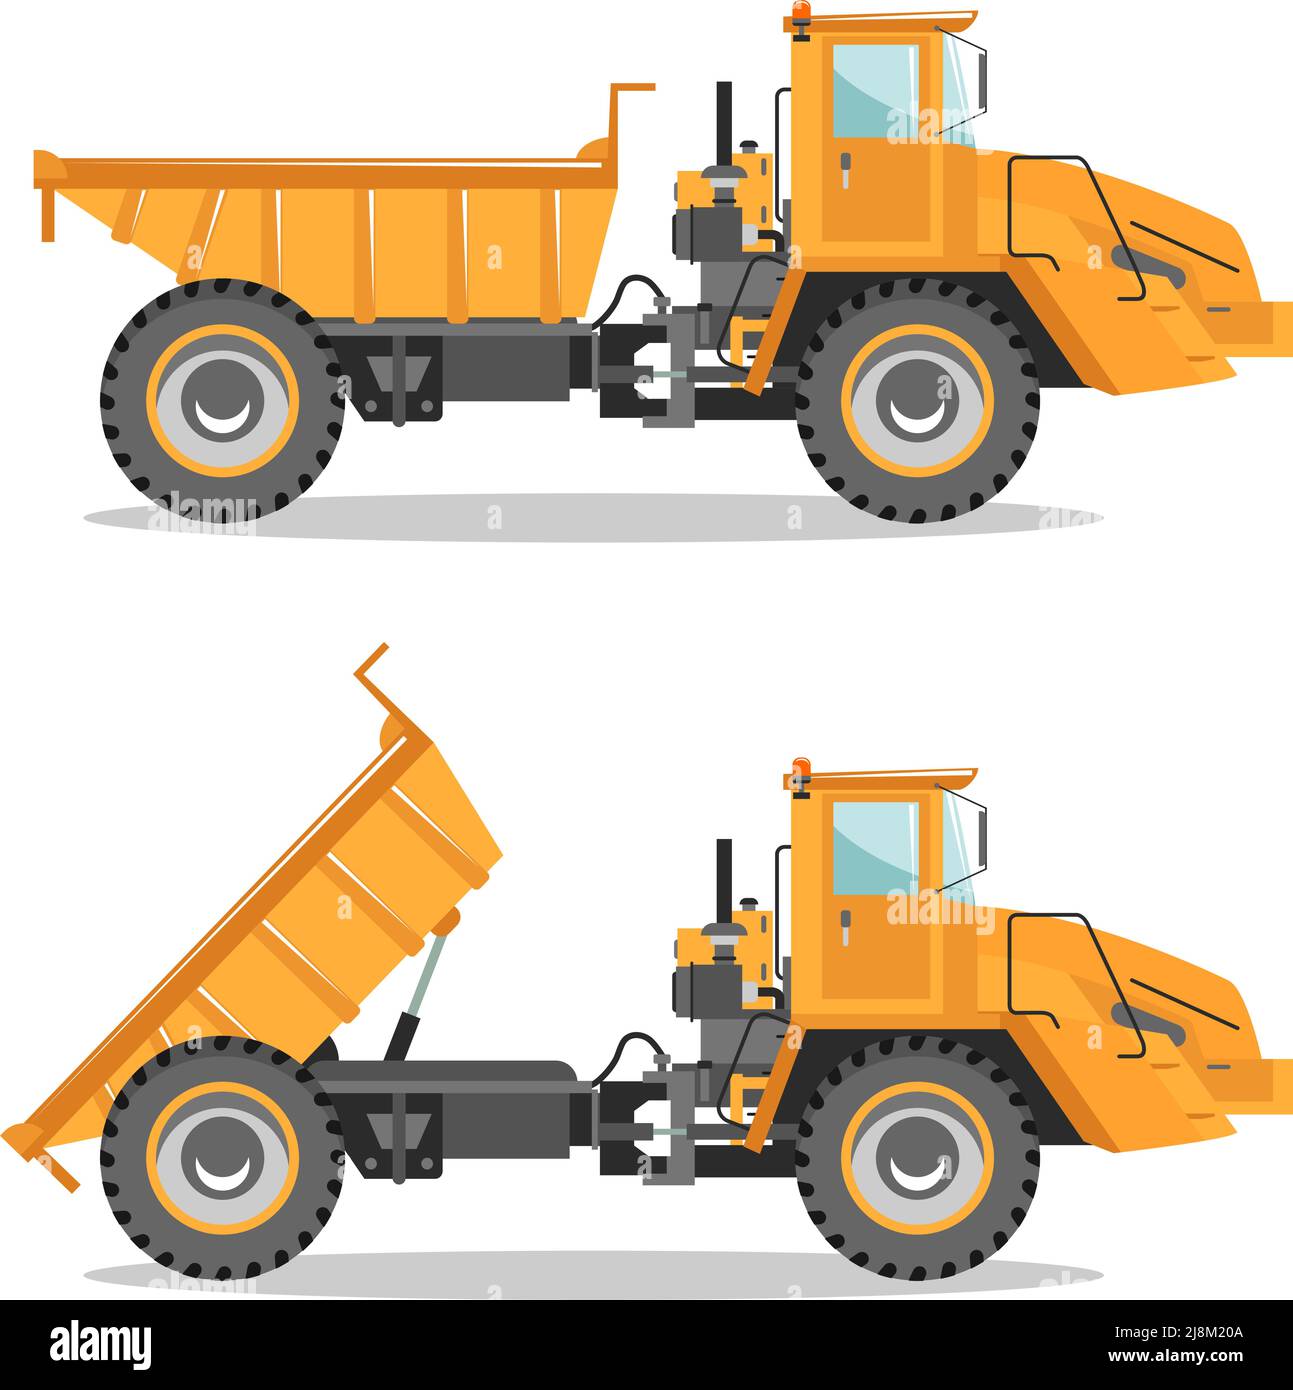 Illustrazione dettagliata del dumper da miniera. Carrello fuori strada con diversa posizione della scocca. Attrezzature per macchine da miniera pesanti e macchinari da costruzione. Illustrazione Vettoriale